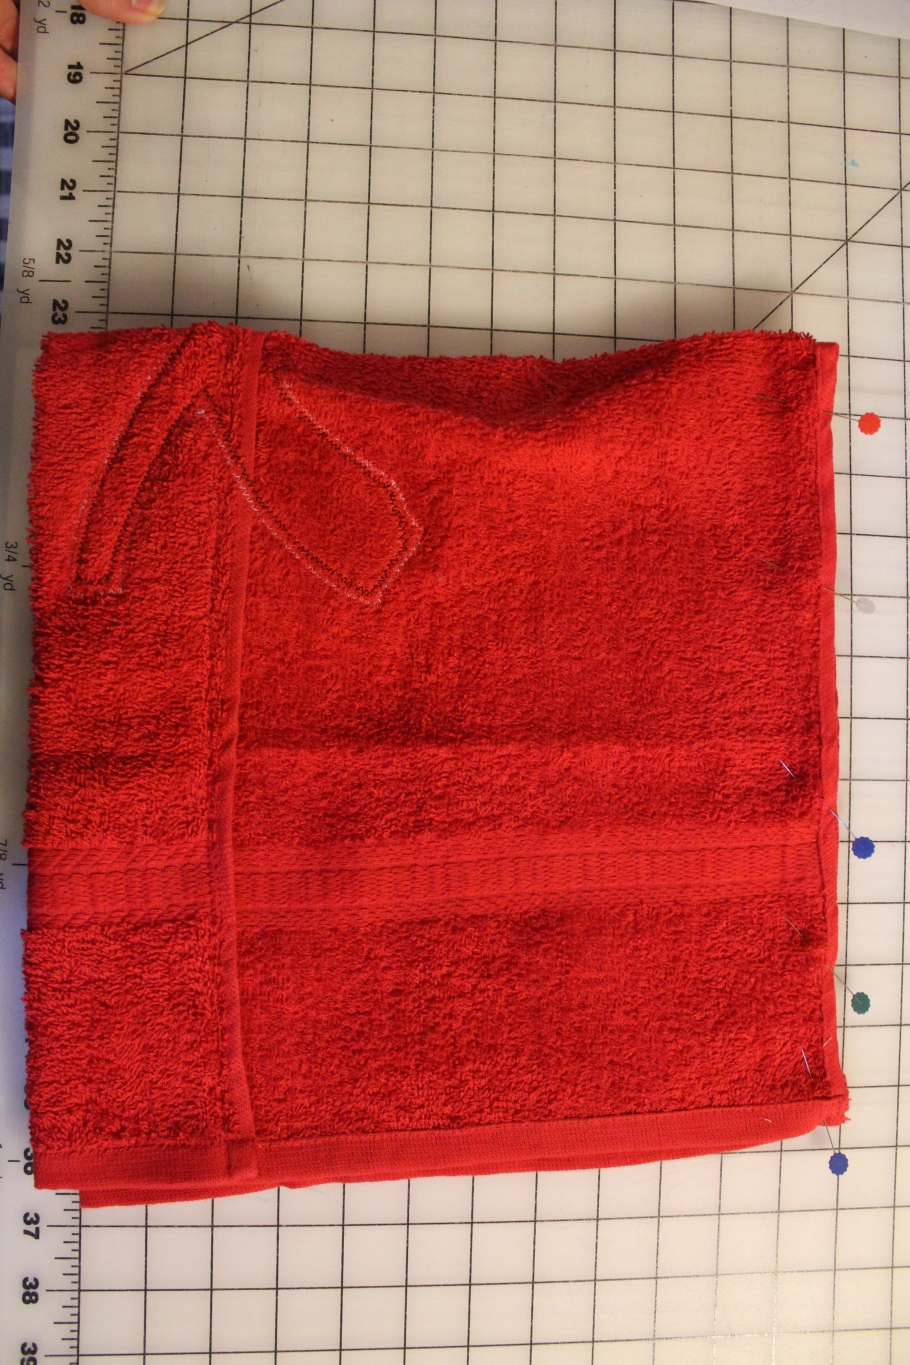 Power Rangers Hoodie Towel Tutorial | Sew On The Edge